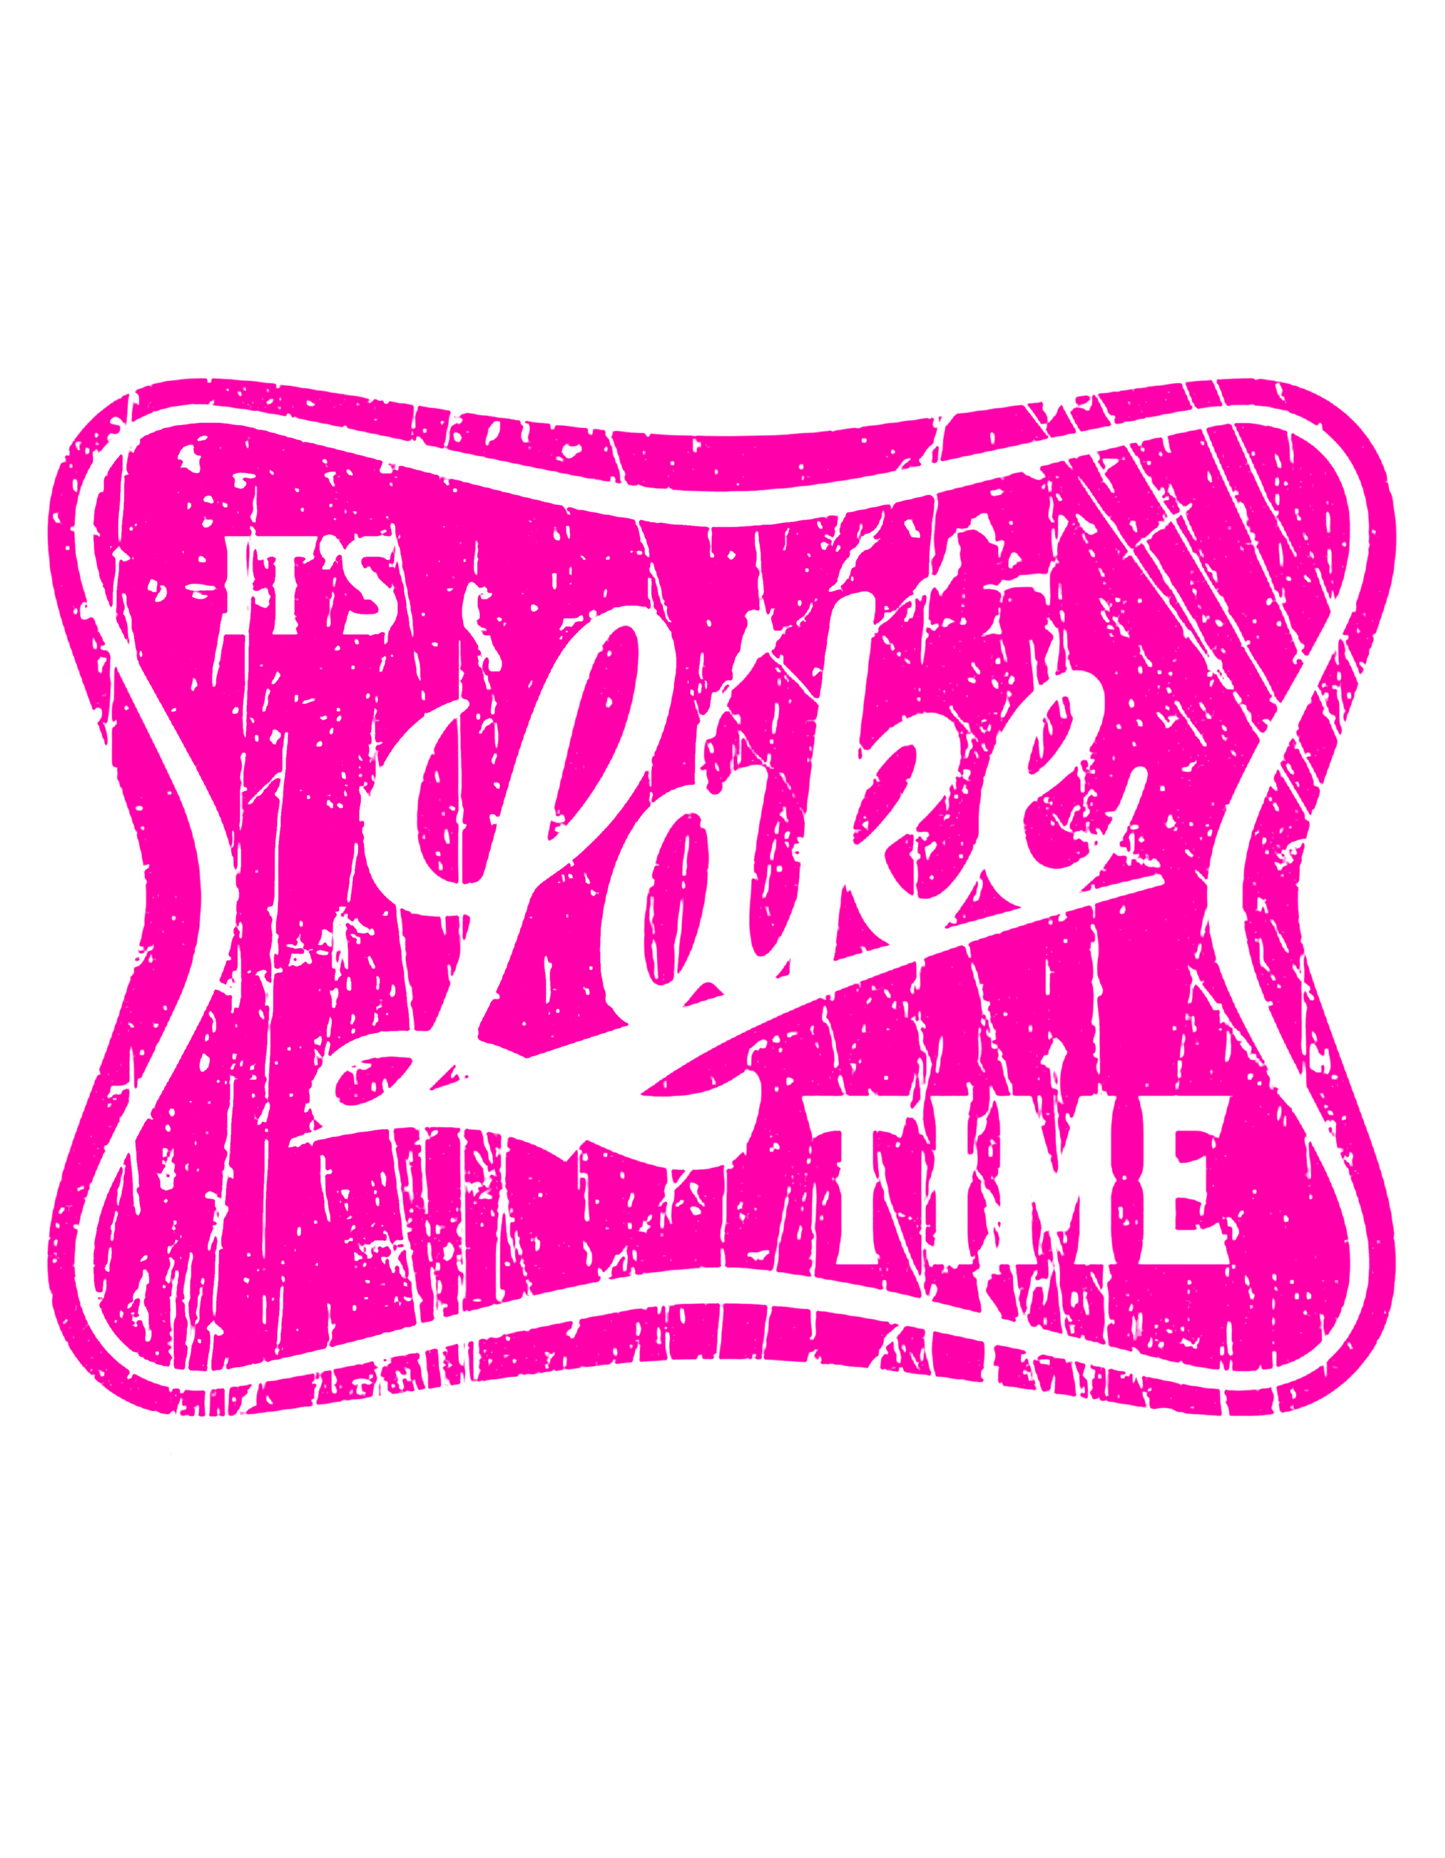 Lake Time